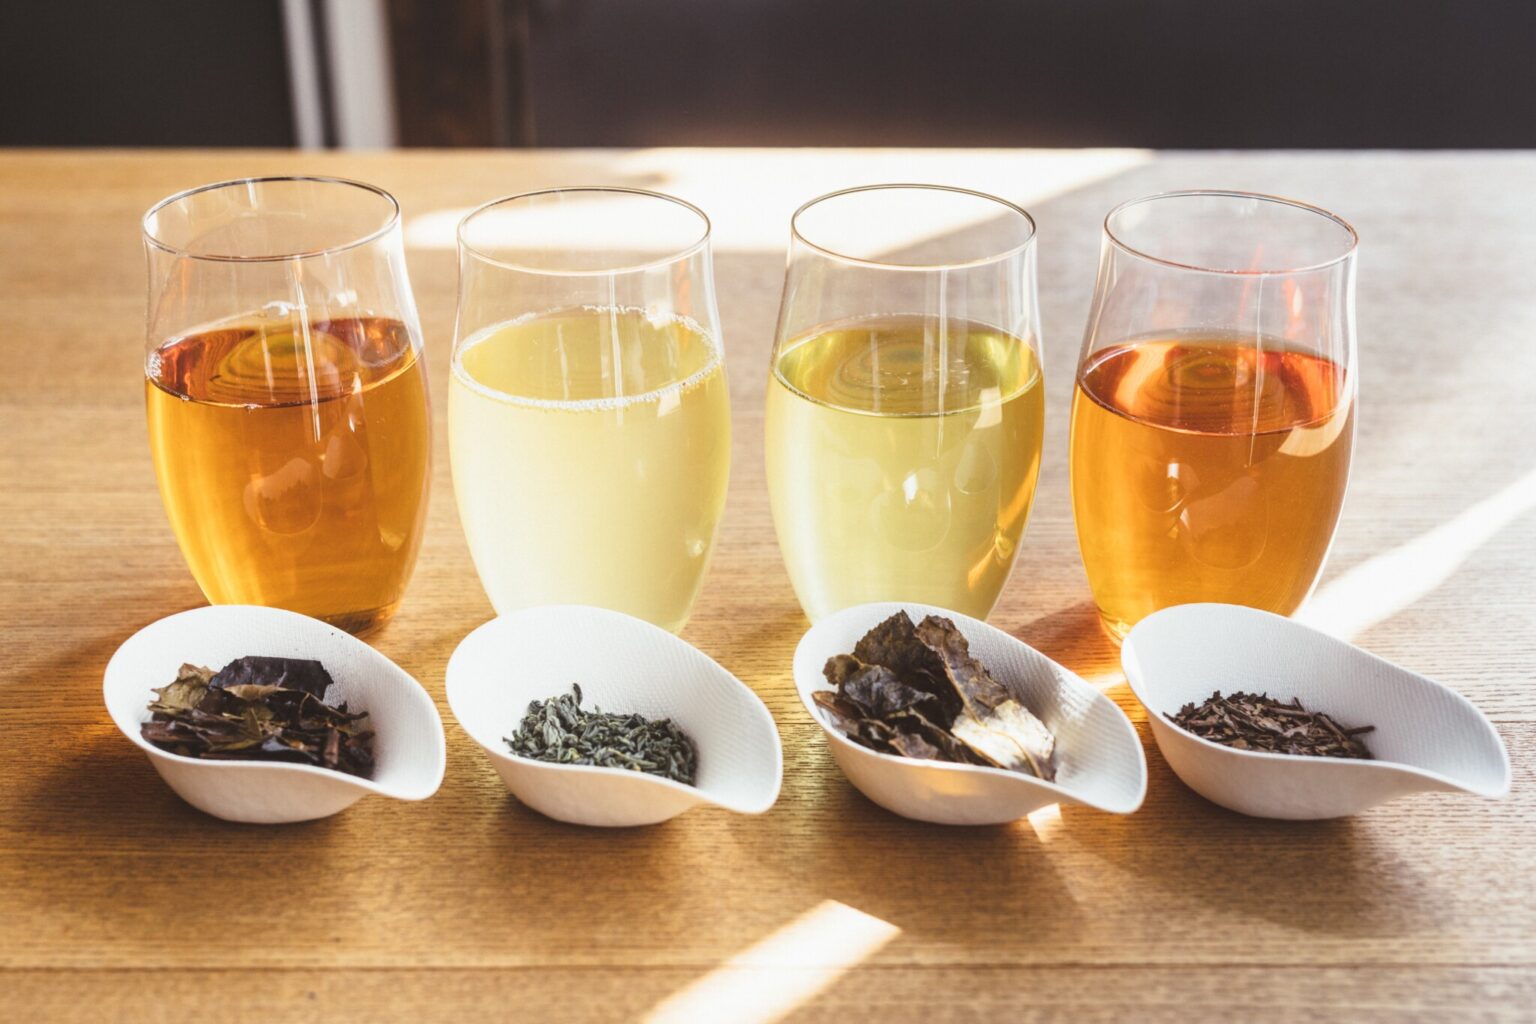 日本茶の世界で今注目を集めるのが、在来茶、ブレンドティー、和紅茶のムーブメント。天然素材を自由に組み合わせて日本茶本来の魅力を高めるクリエイティブなブレンドティーは、お茶の楽しみがぐっと広がる新たなおいしさを体験できる。